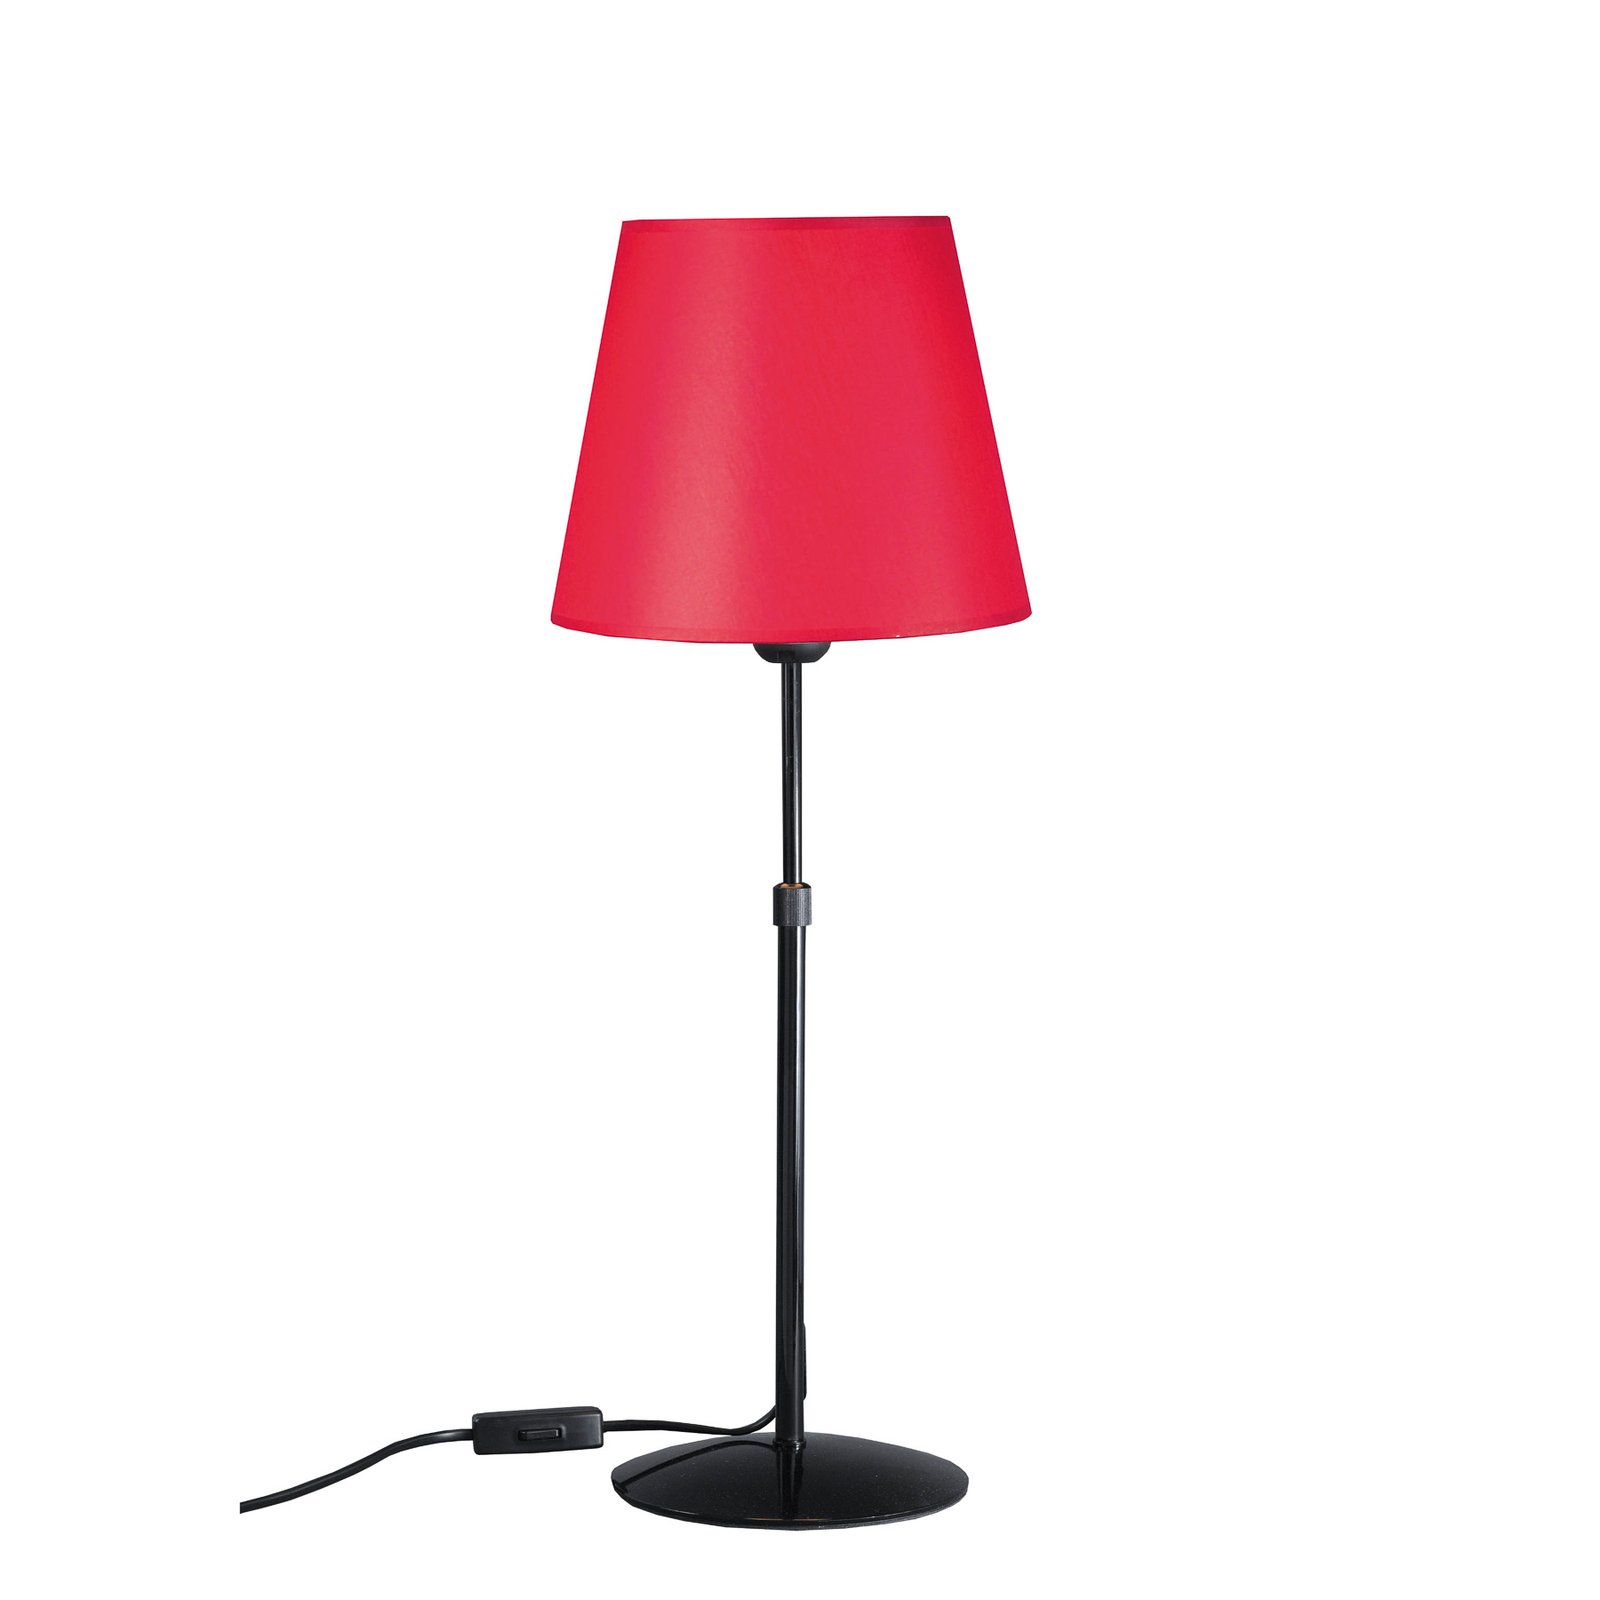 Aluminor Store -pöytälamppu, musta/punainen